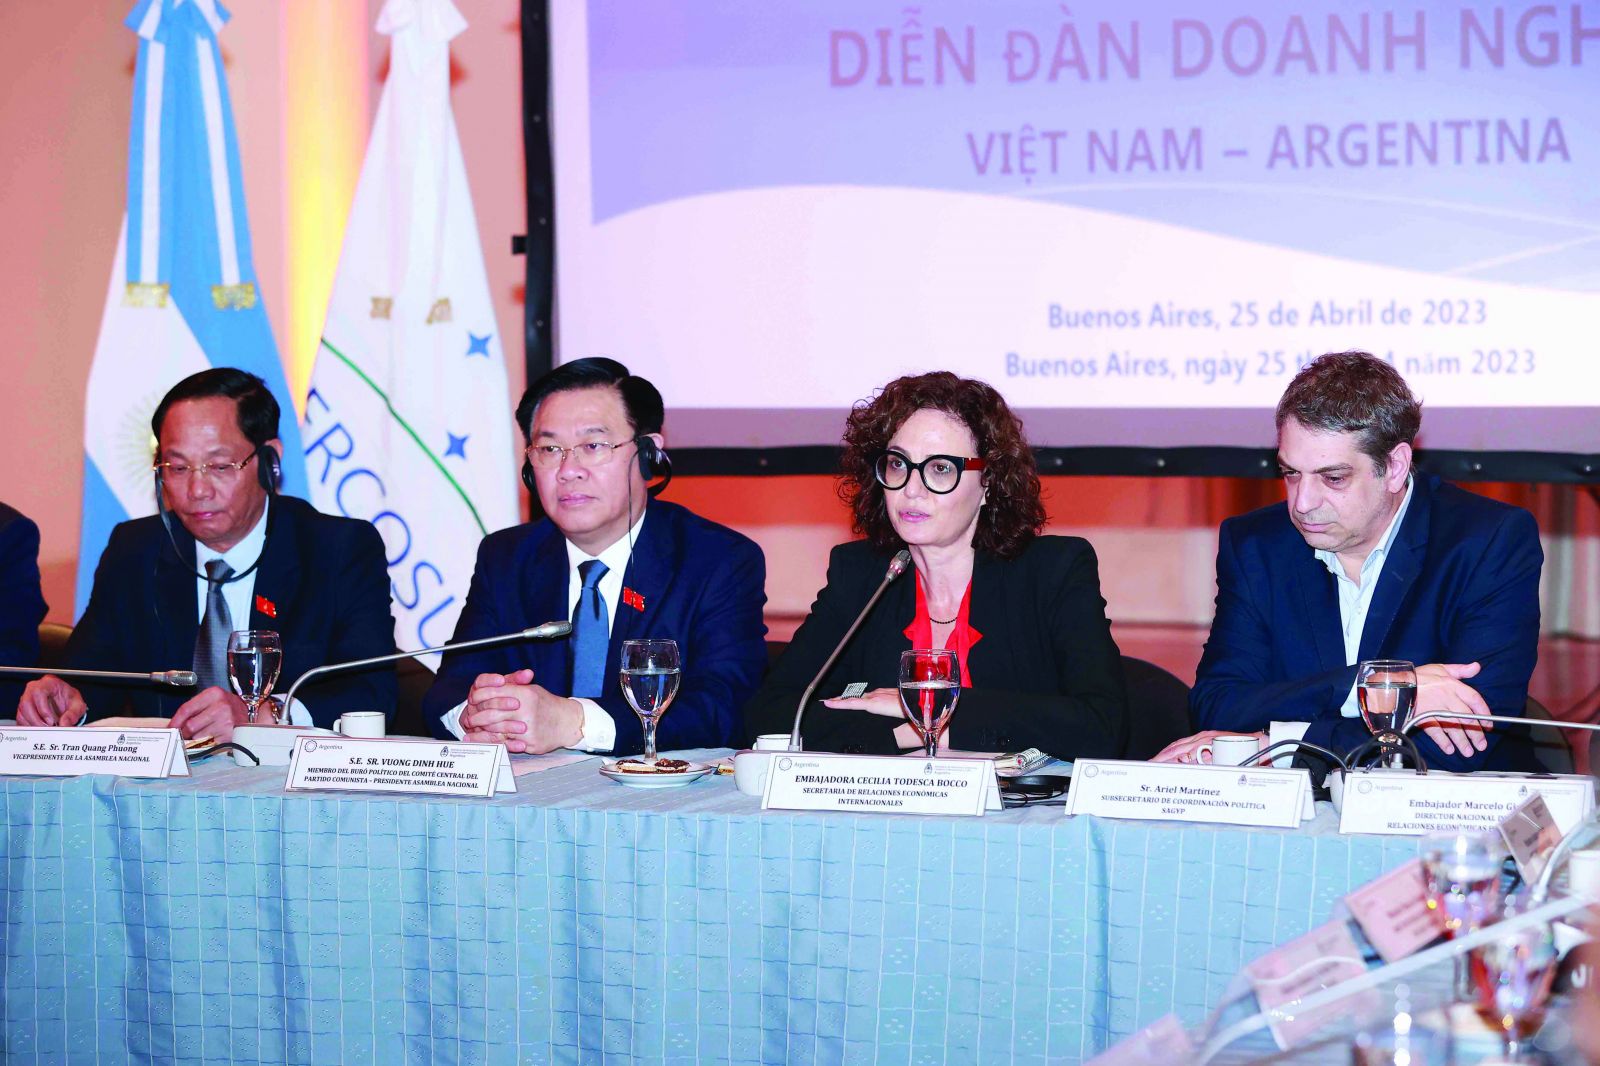 Chủ tịch Quốc hội Vương Đình Huệ và bà Quốc vụ khanh Bộ Ngoại giao Ngoại thương và Tôn giáo Cecilia Todesca Bocco tham dự Diễn đàn doanh nghiệp Việt Nam – Argentina ngày 26/4/2023.